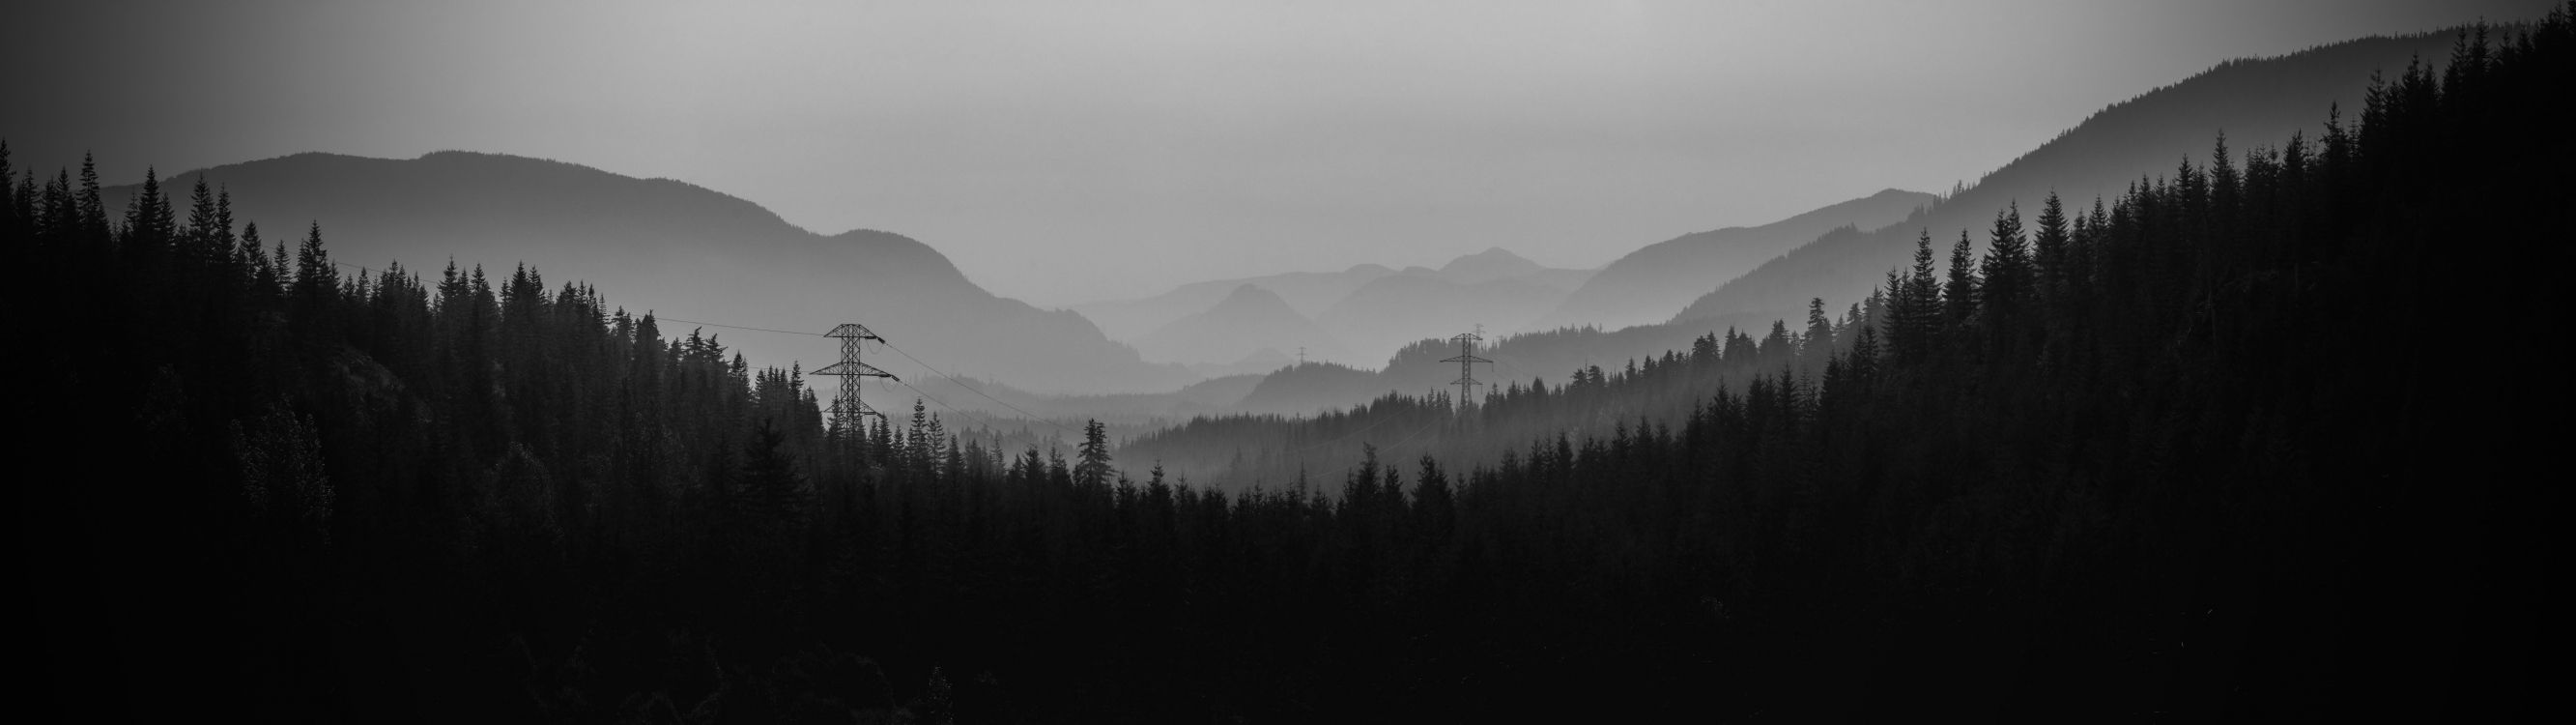 性质, 多山的地貌, 雾, 荒野, Windows10 壁纸 7680x2160 允许